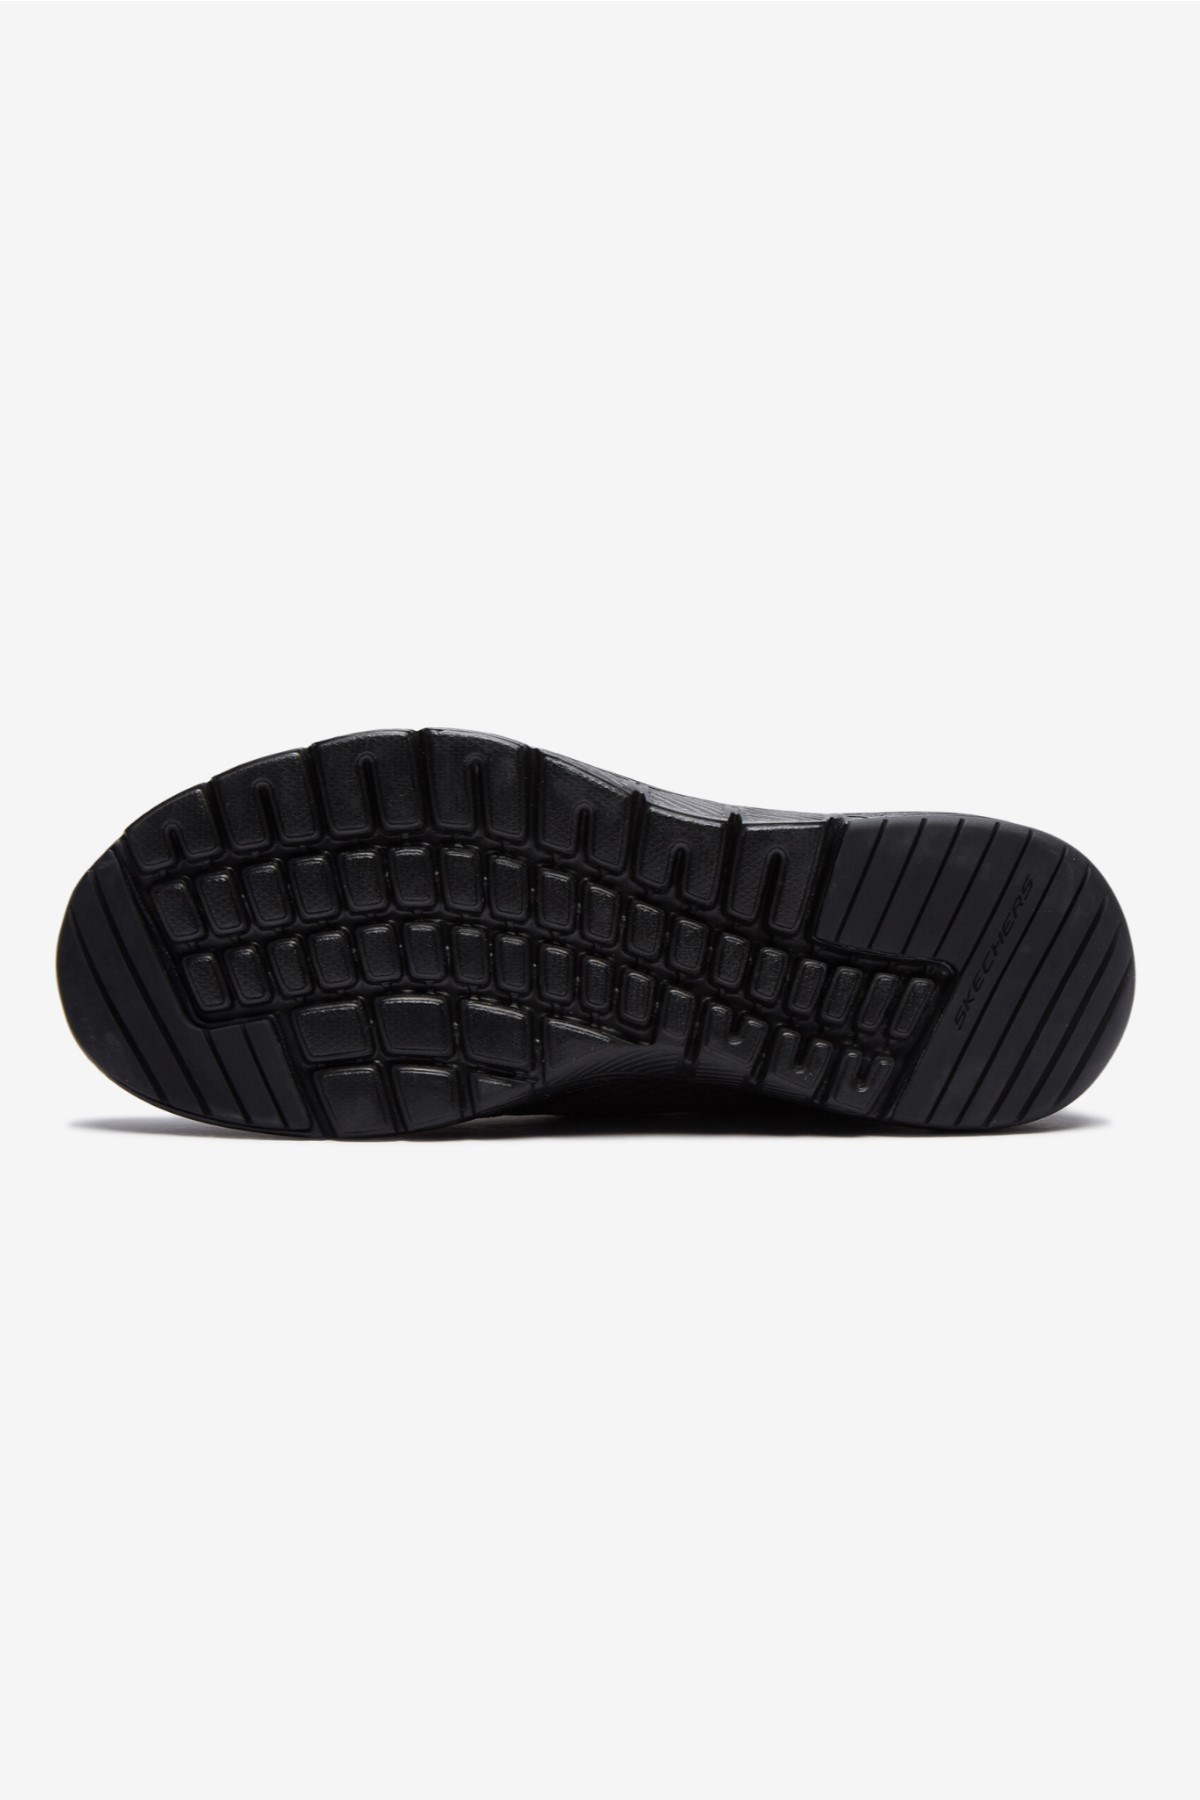 Skechers Erkek Ayakkabı S52954 Siyah